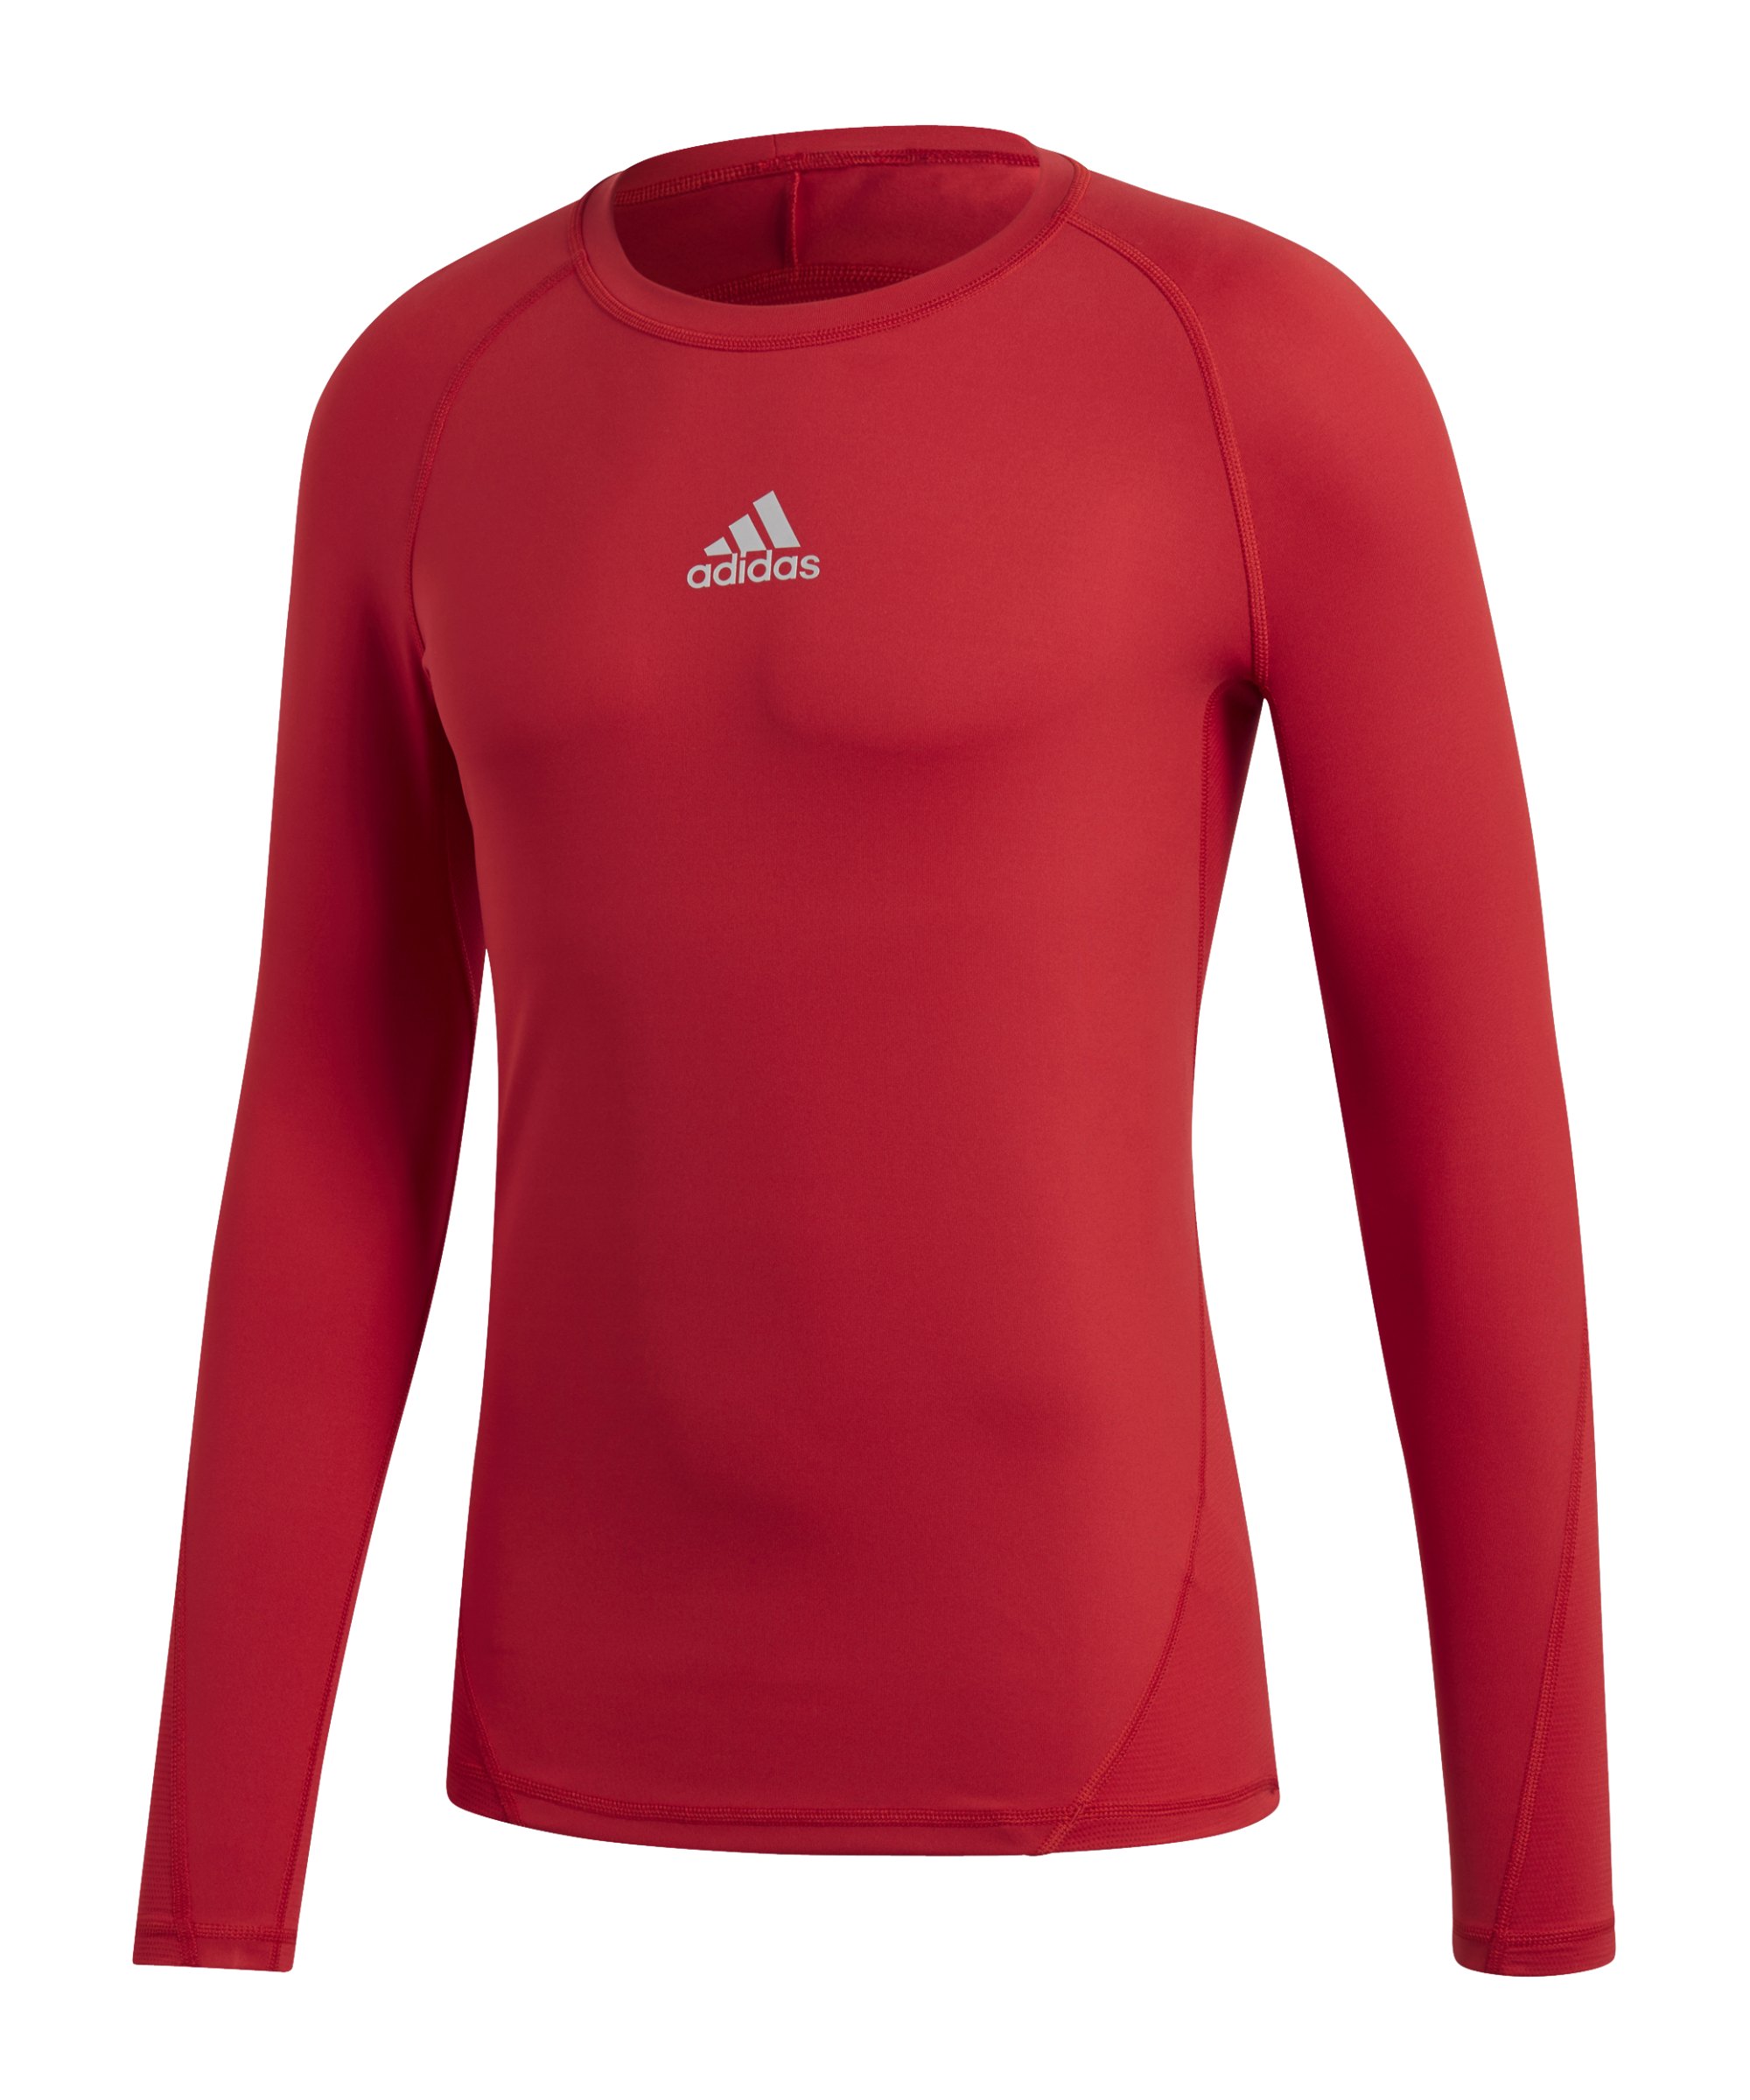 adidas Alphaskin Sport Shirt Longsleeve Rot - rot